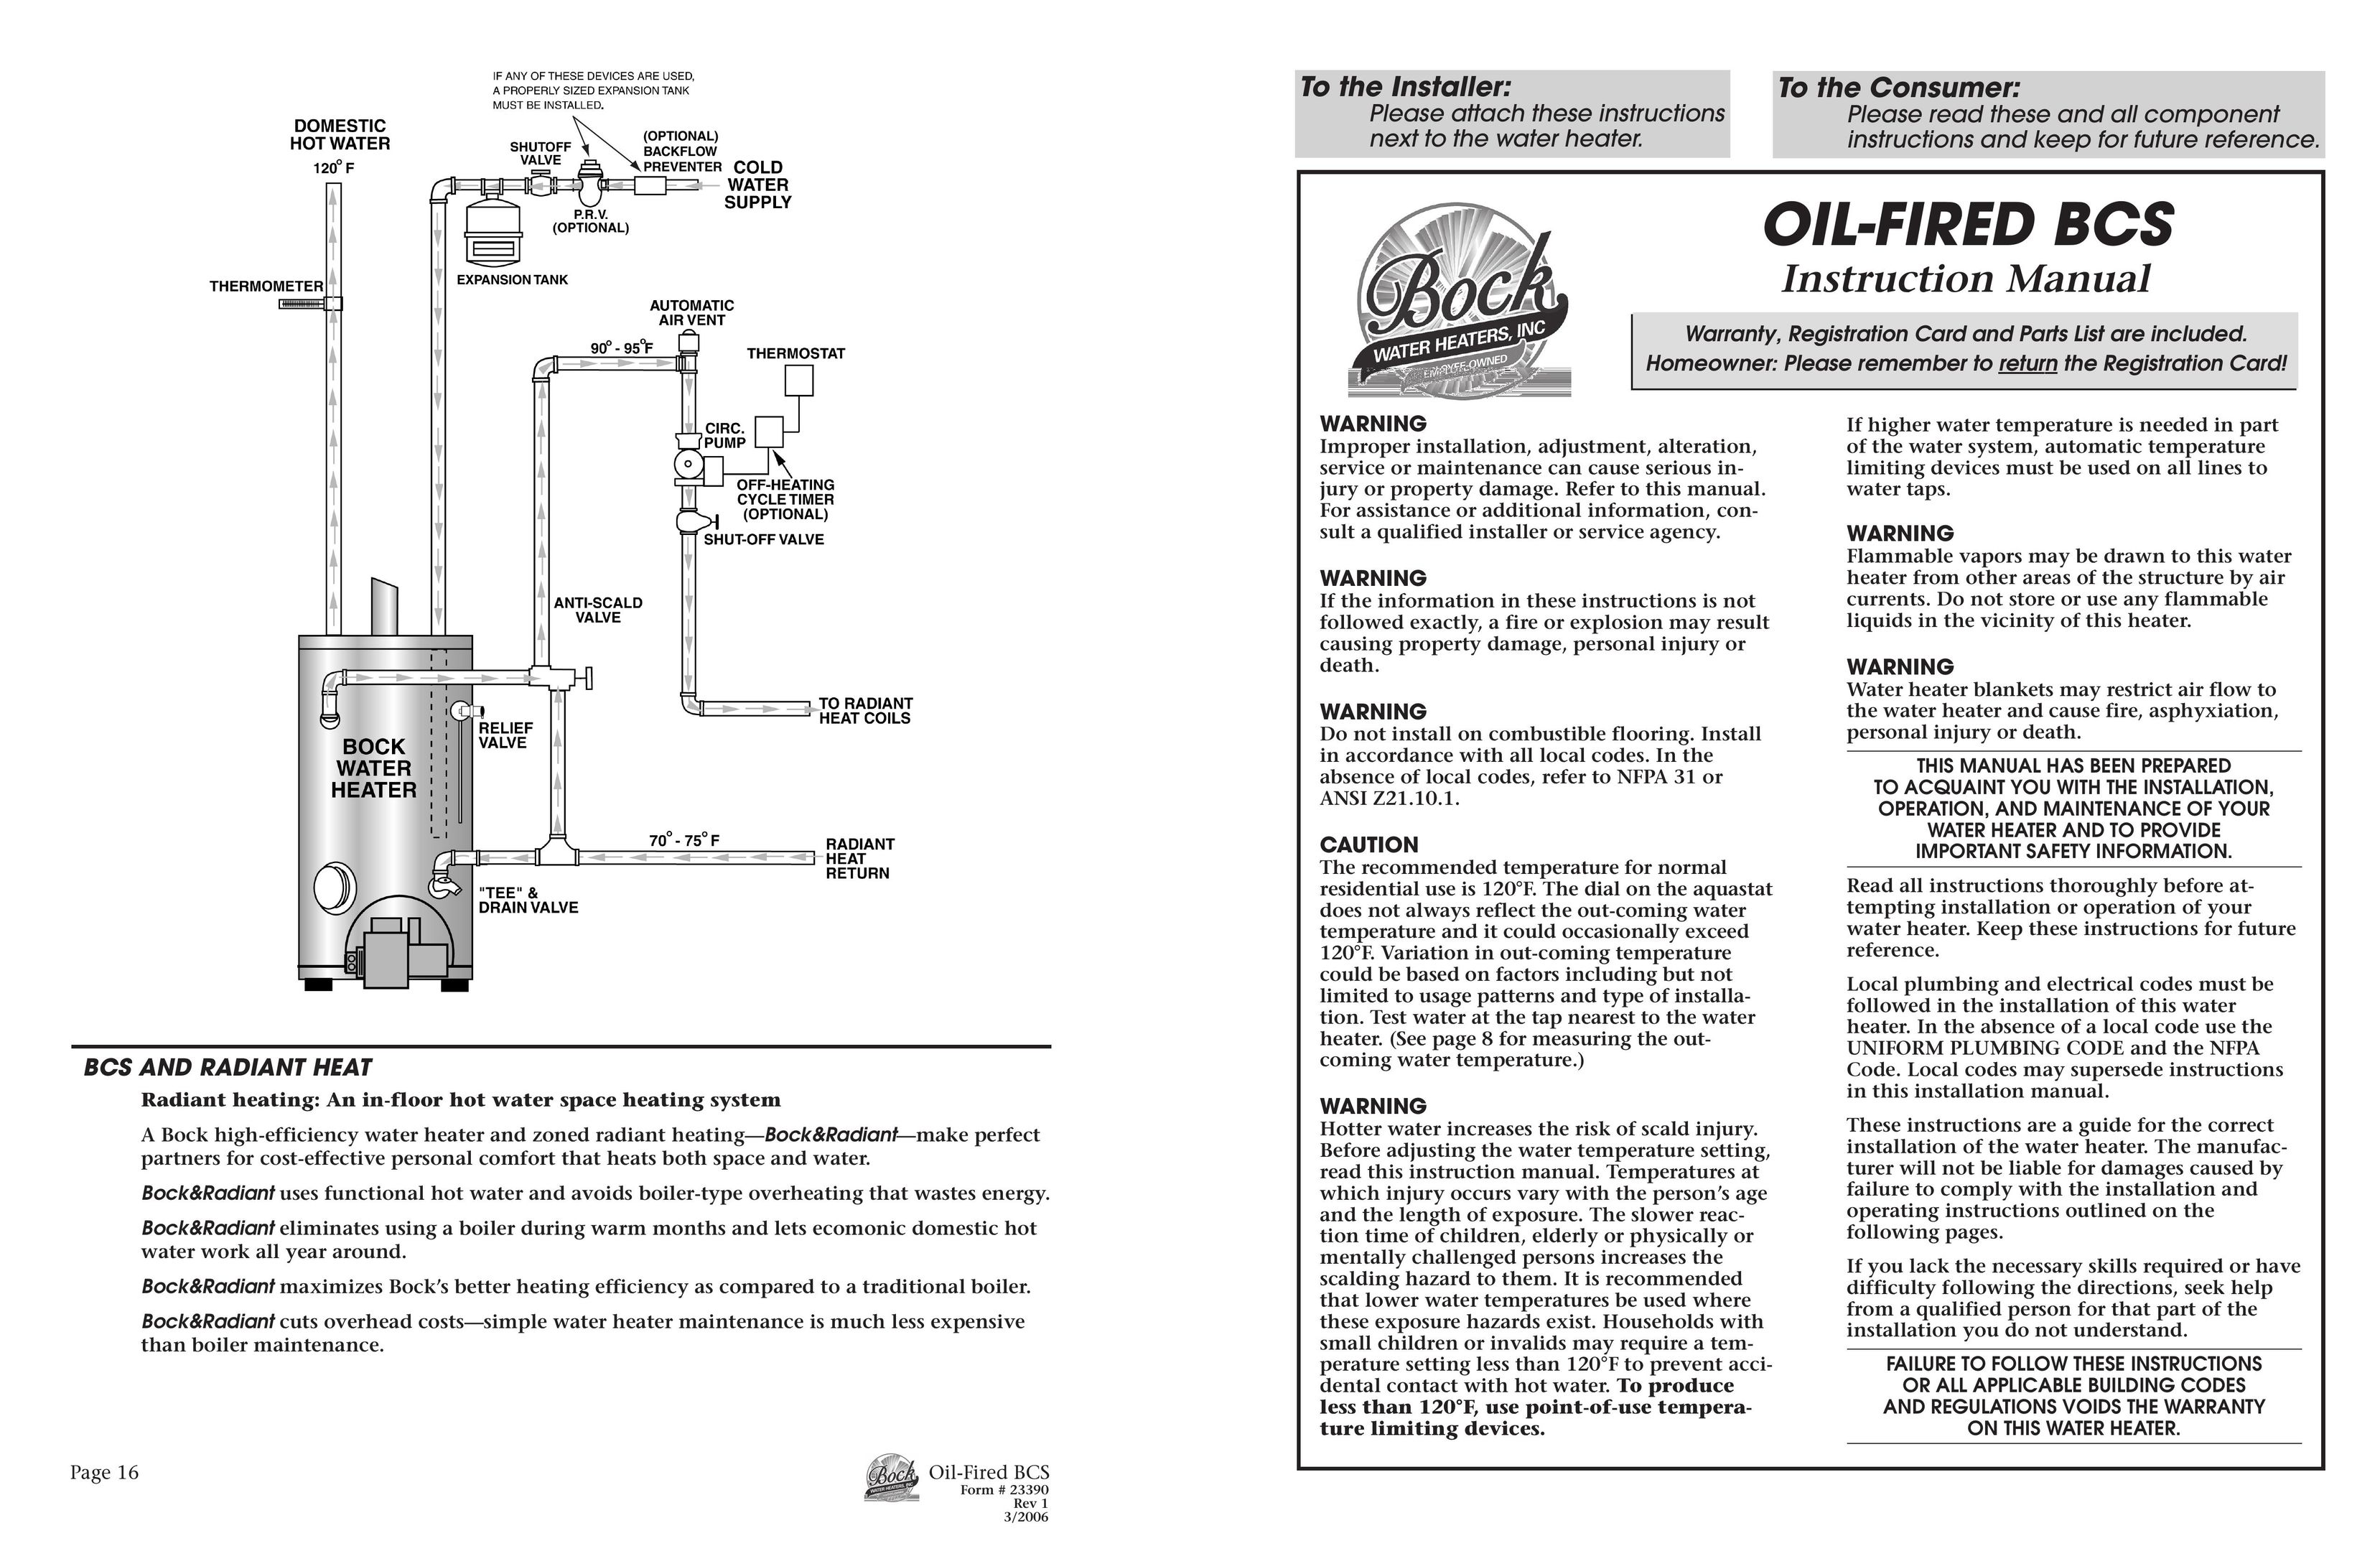 BCS Oil-Fired Boiler User Manual